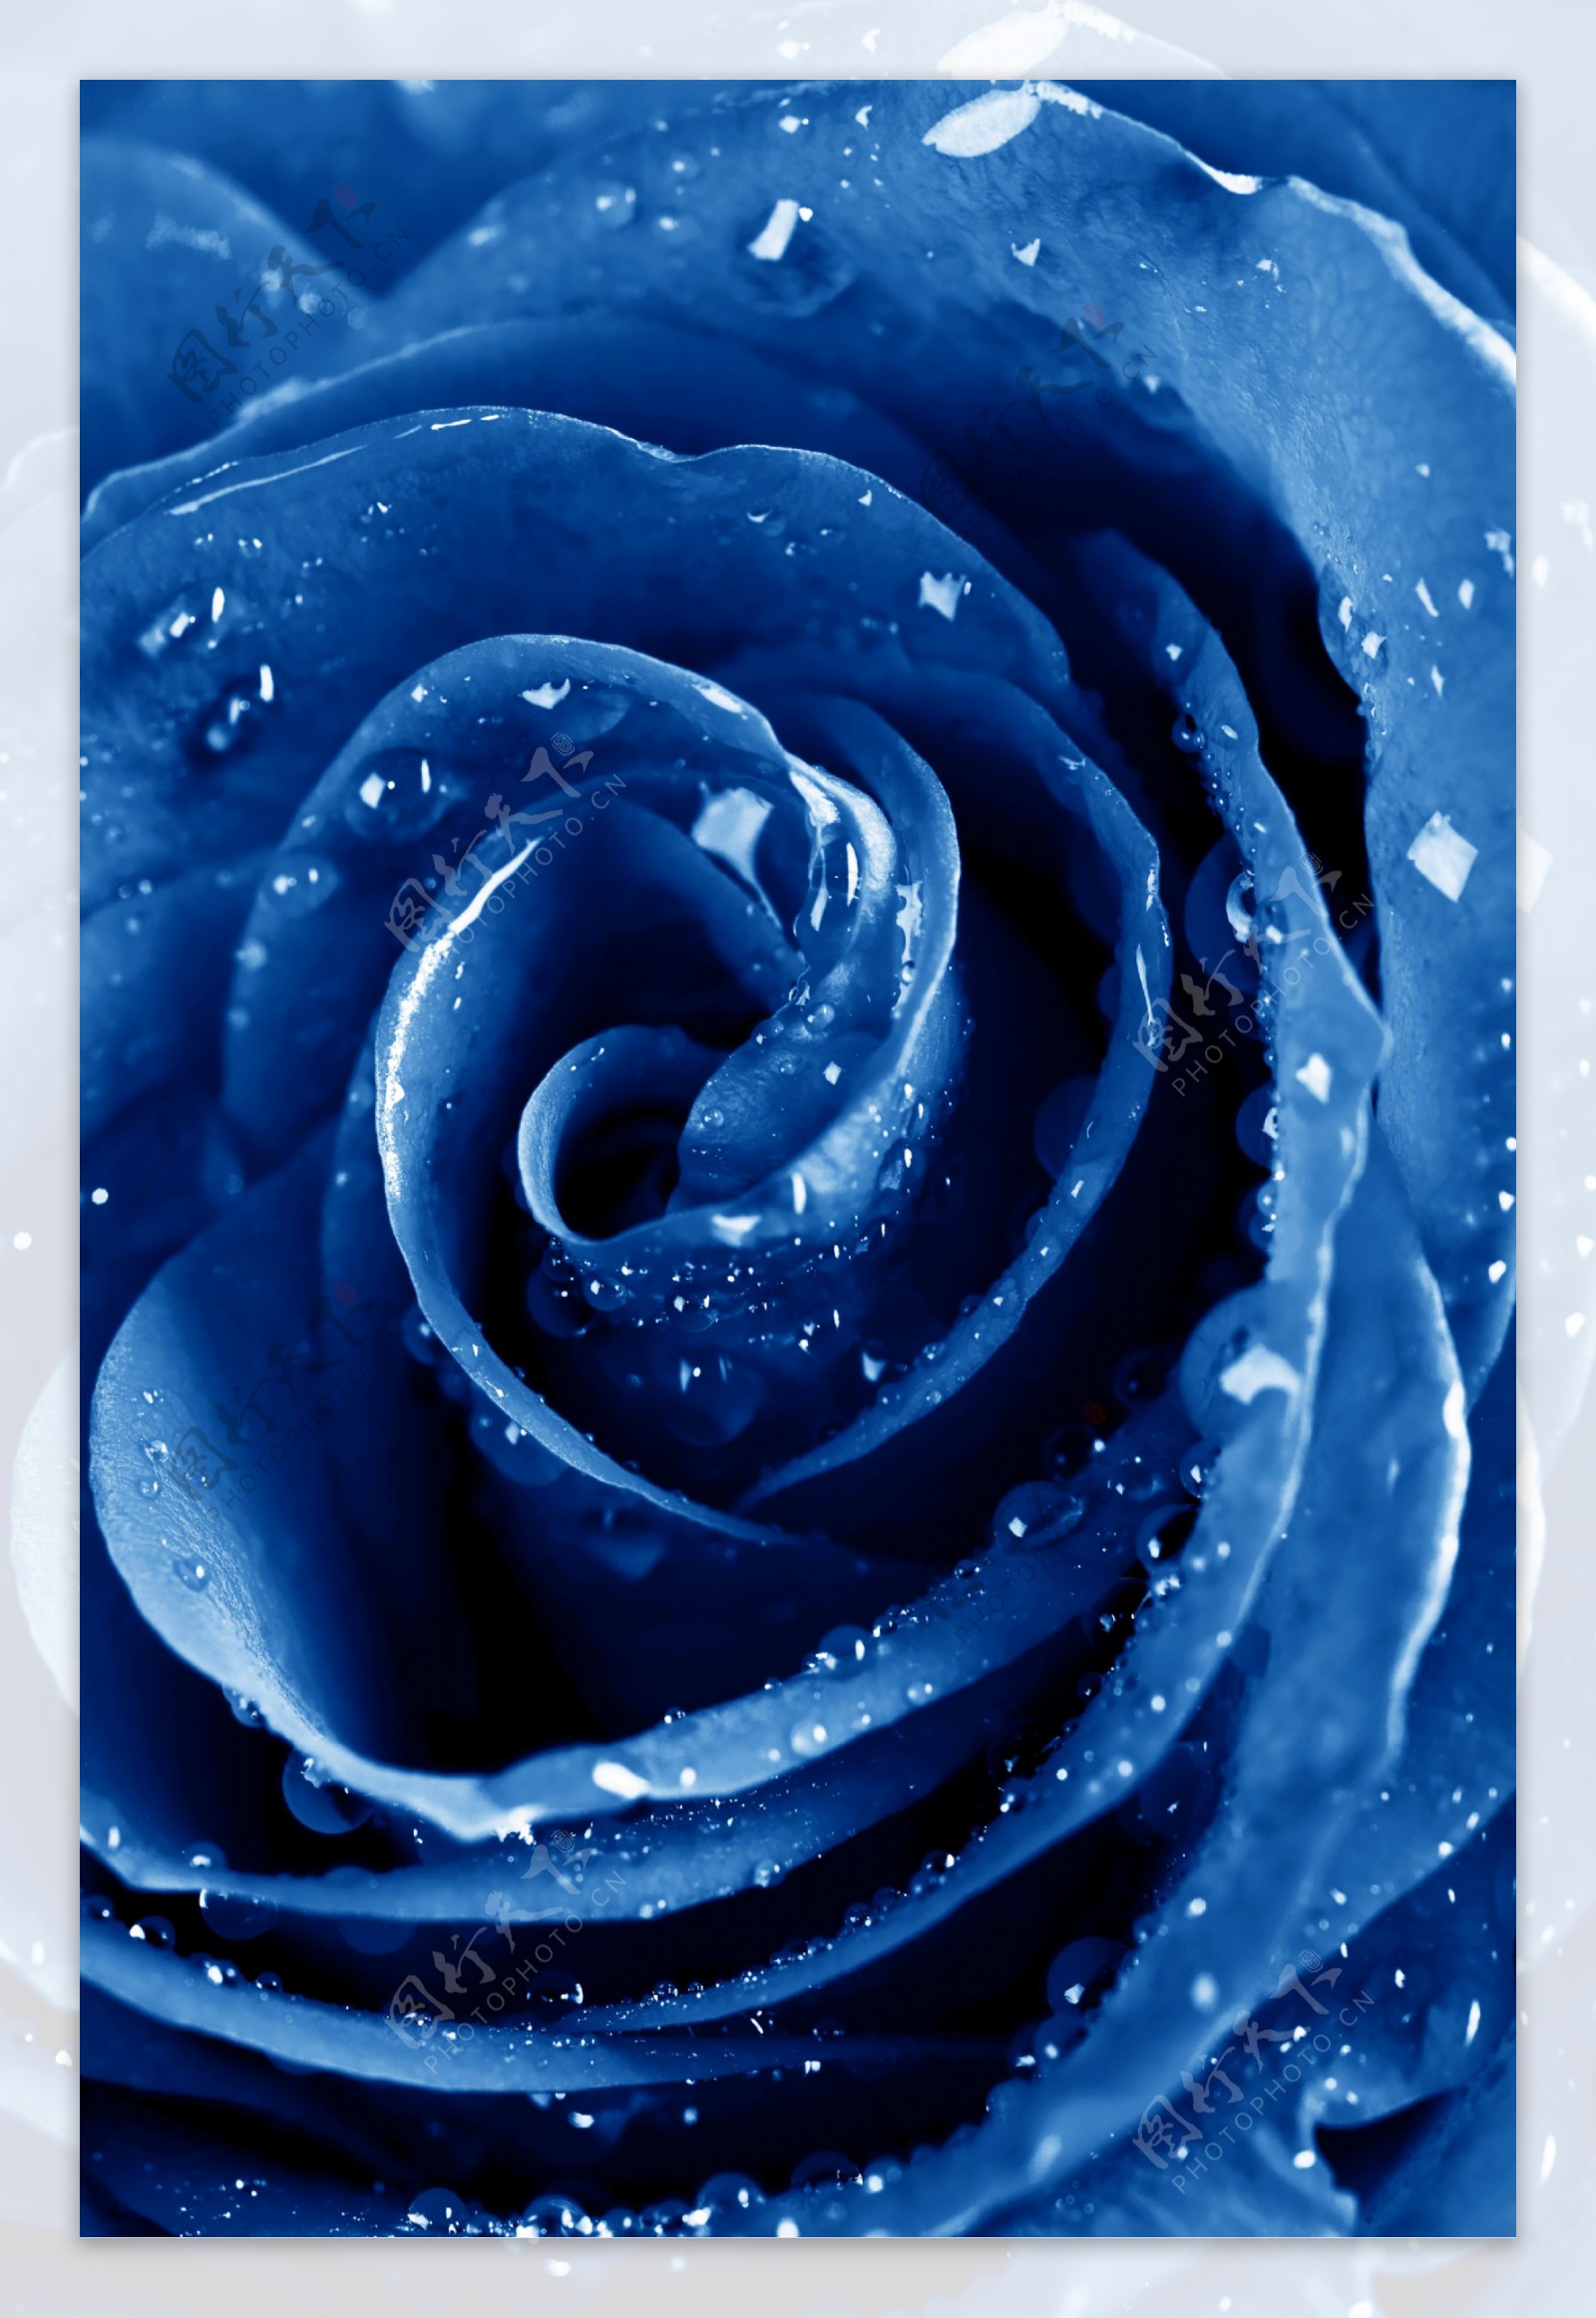 蓝玫瑰图片 - 25H.NET壁纸库